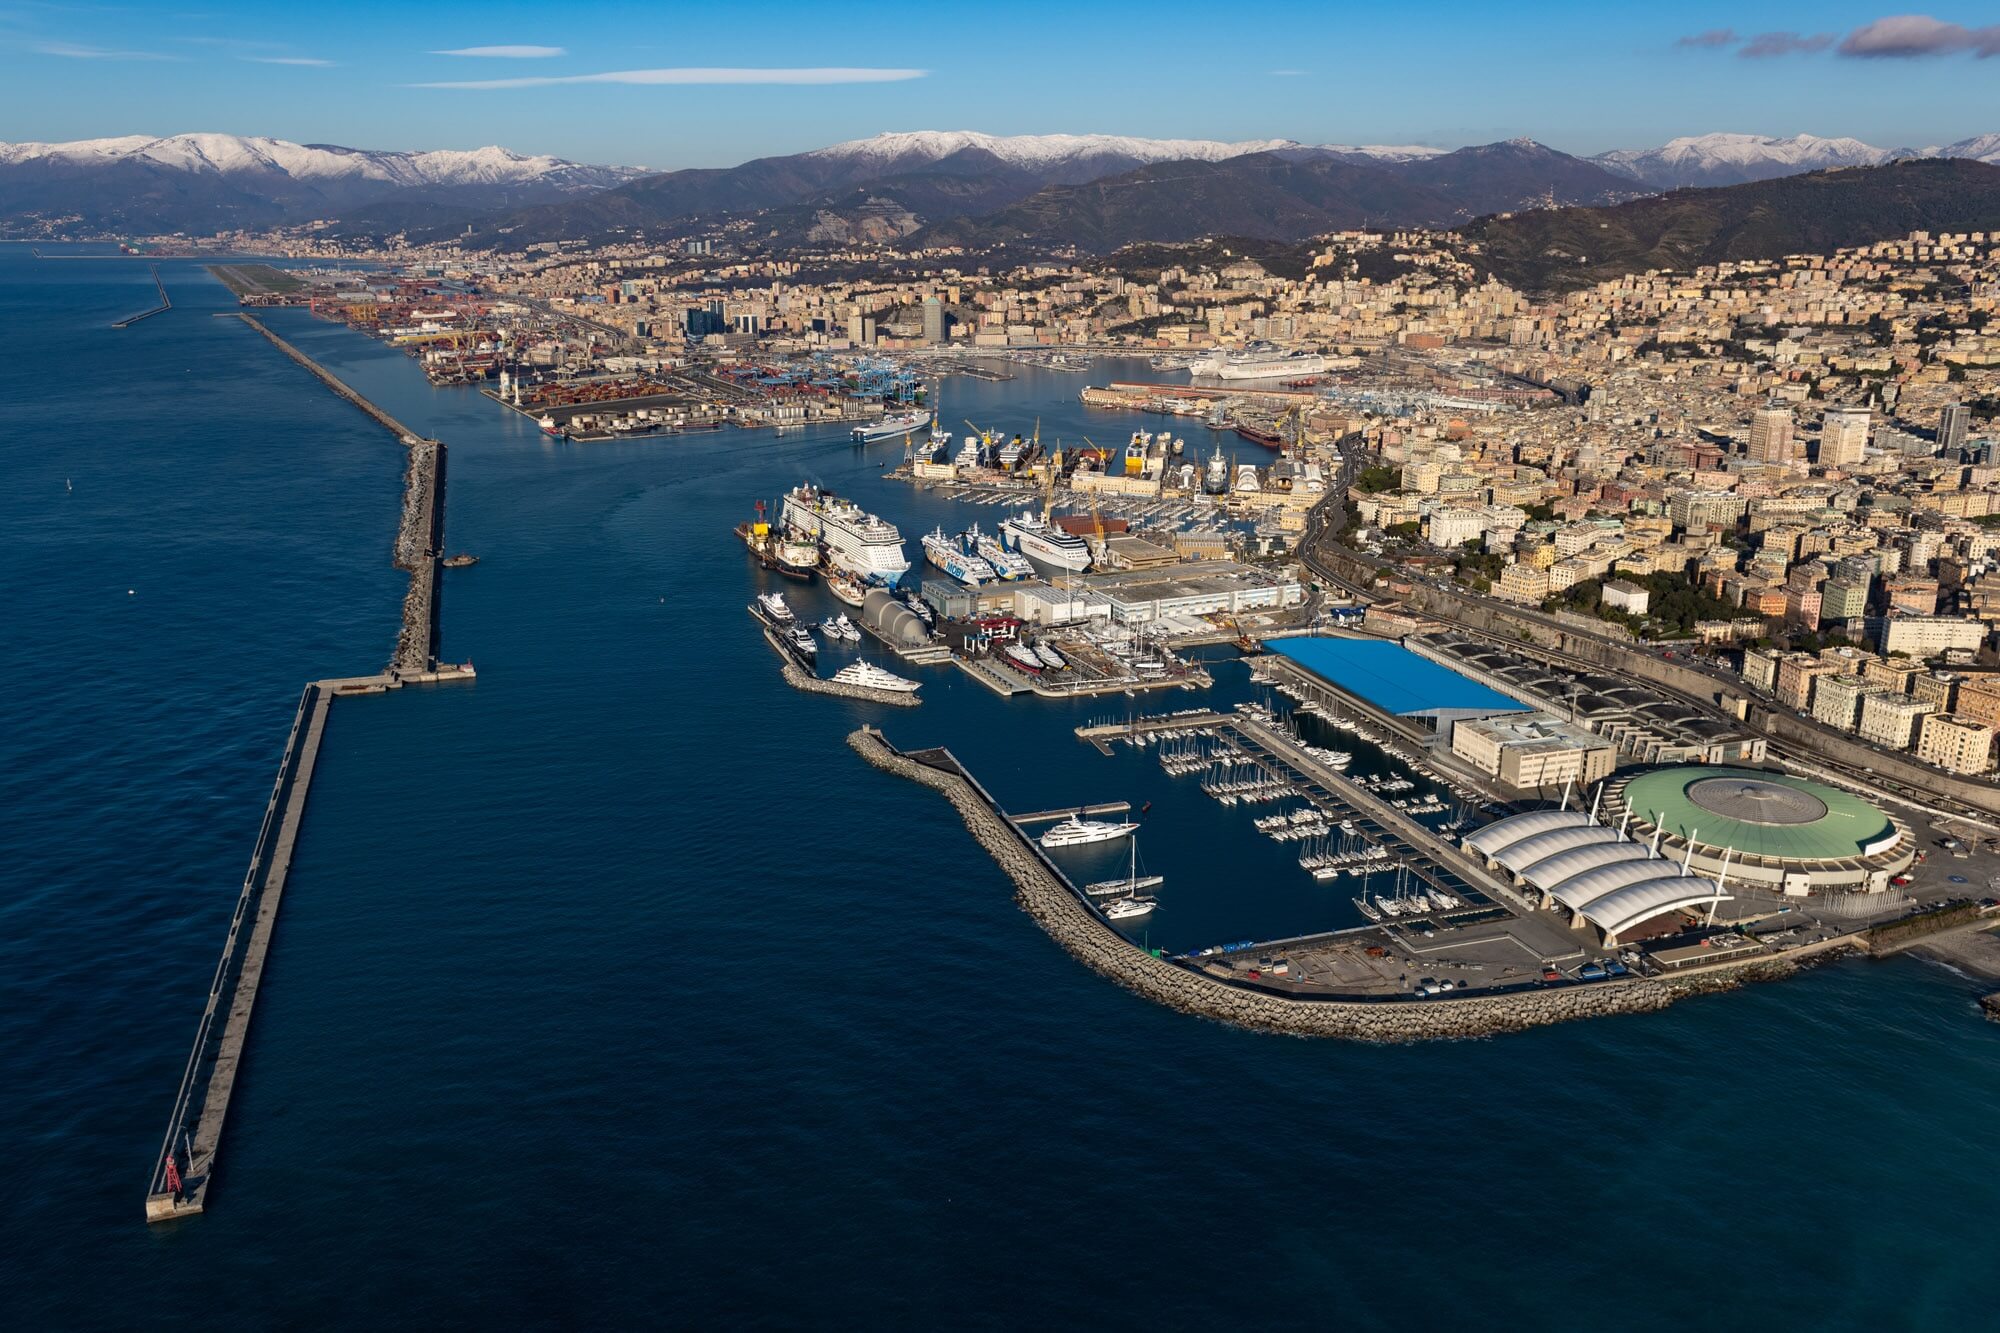 L’annuncio di Webuild: nuova fase di lavorazione nel cantiere subacqueo di Genova | L’iniziativa